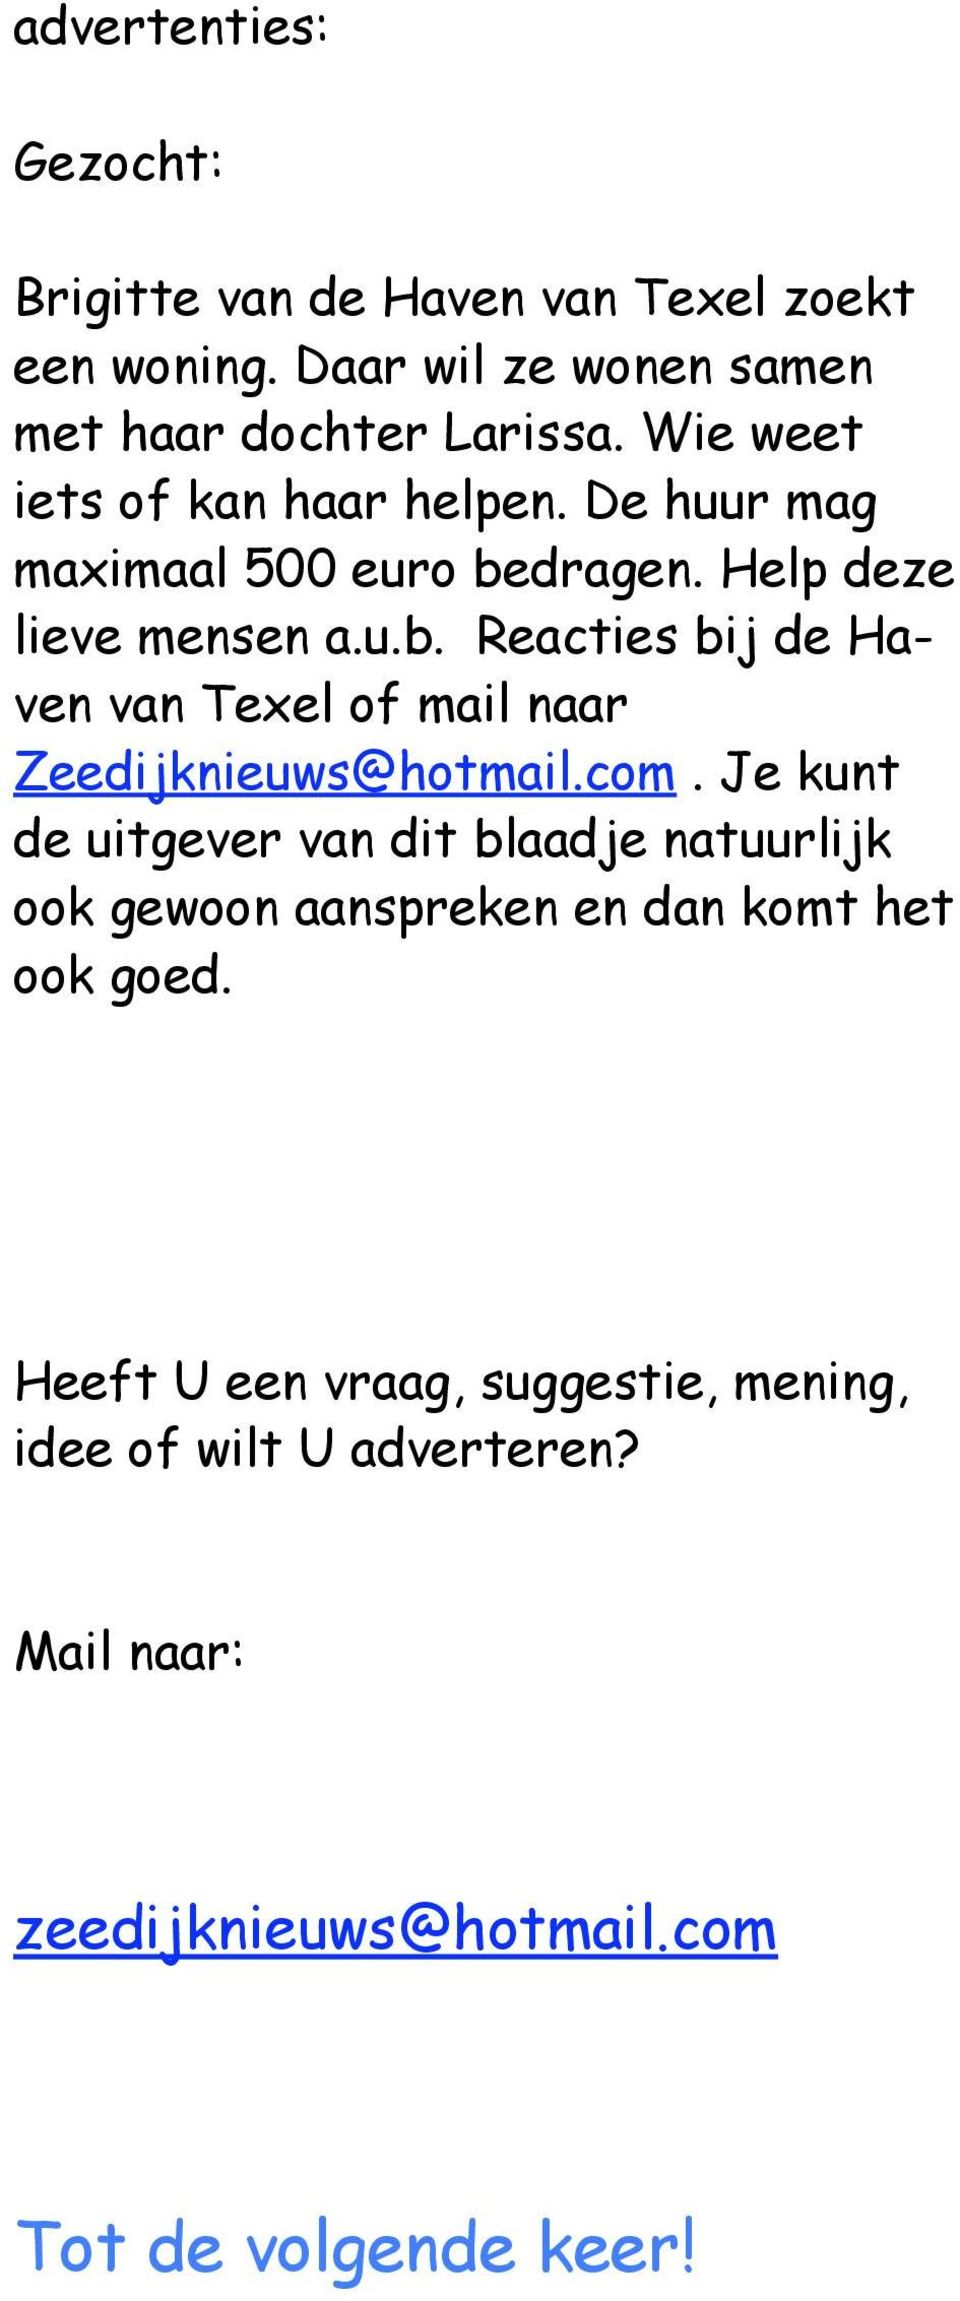 dragen. Help deze lieve mensen a.u.b. Reacties bij de Haven van Texel of mail naar Zeedijknieuws@hotmail.com.